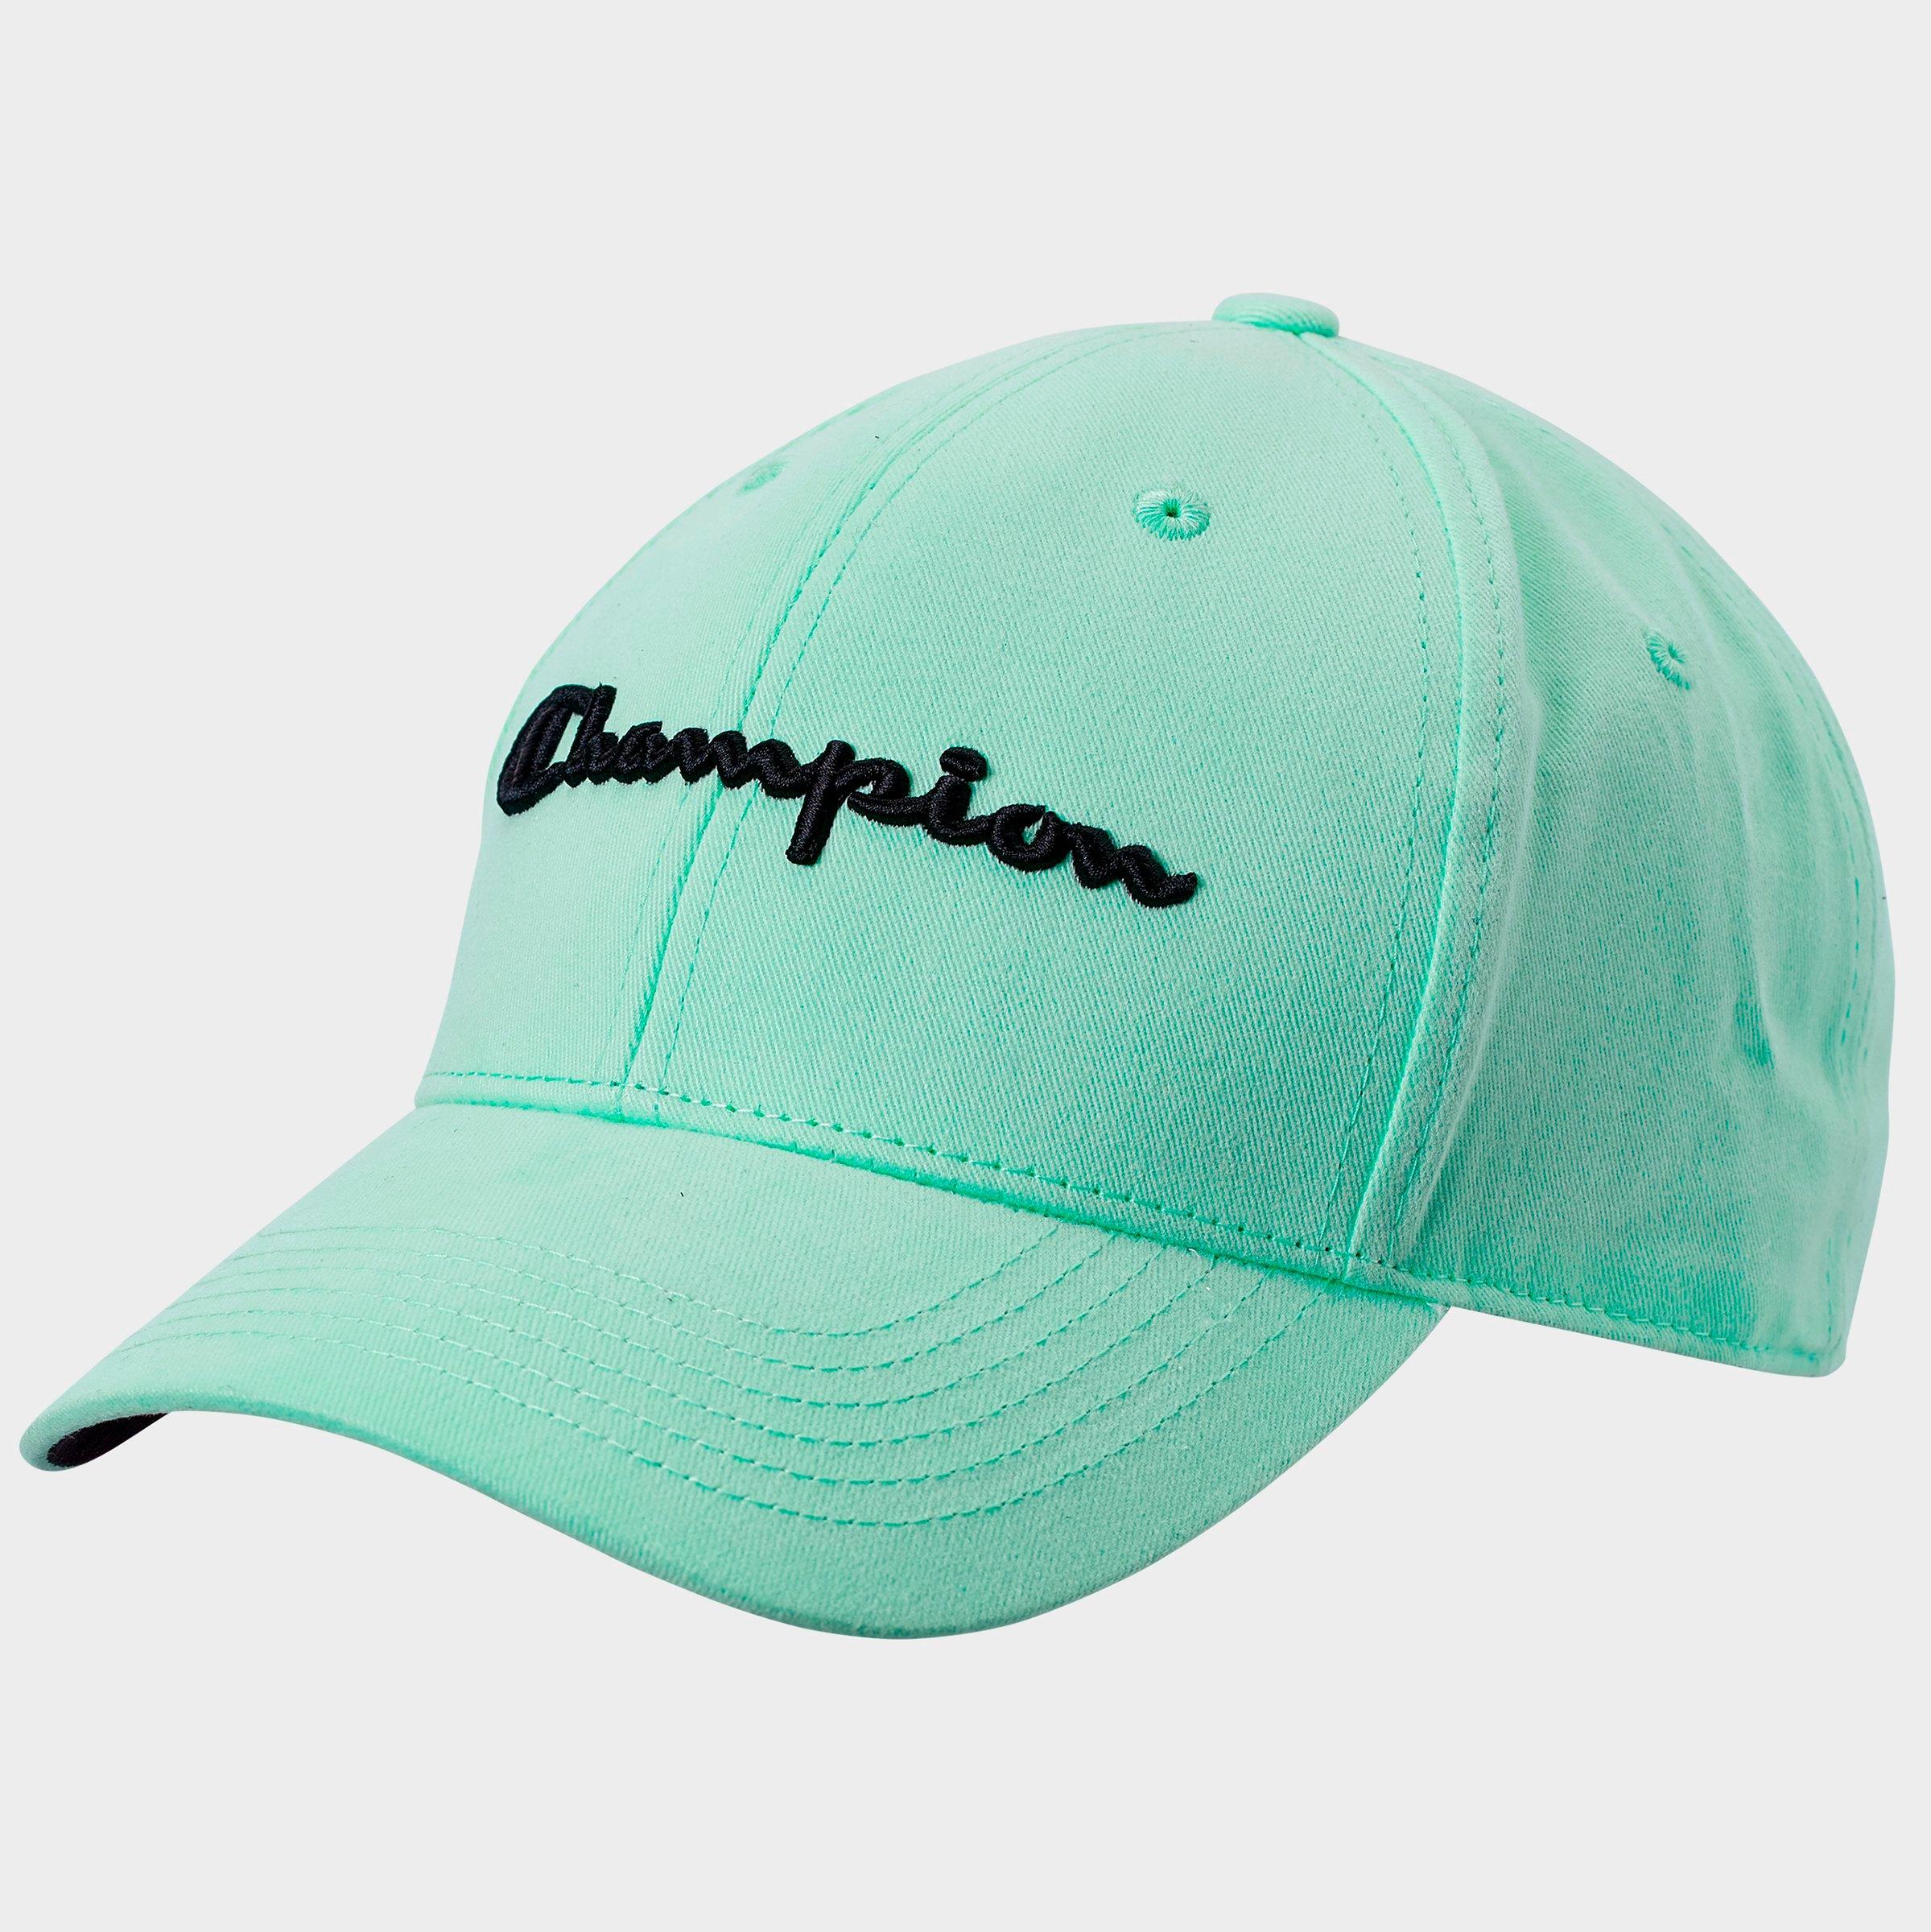 champion green classic twill hat